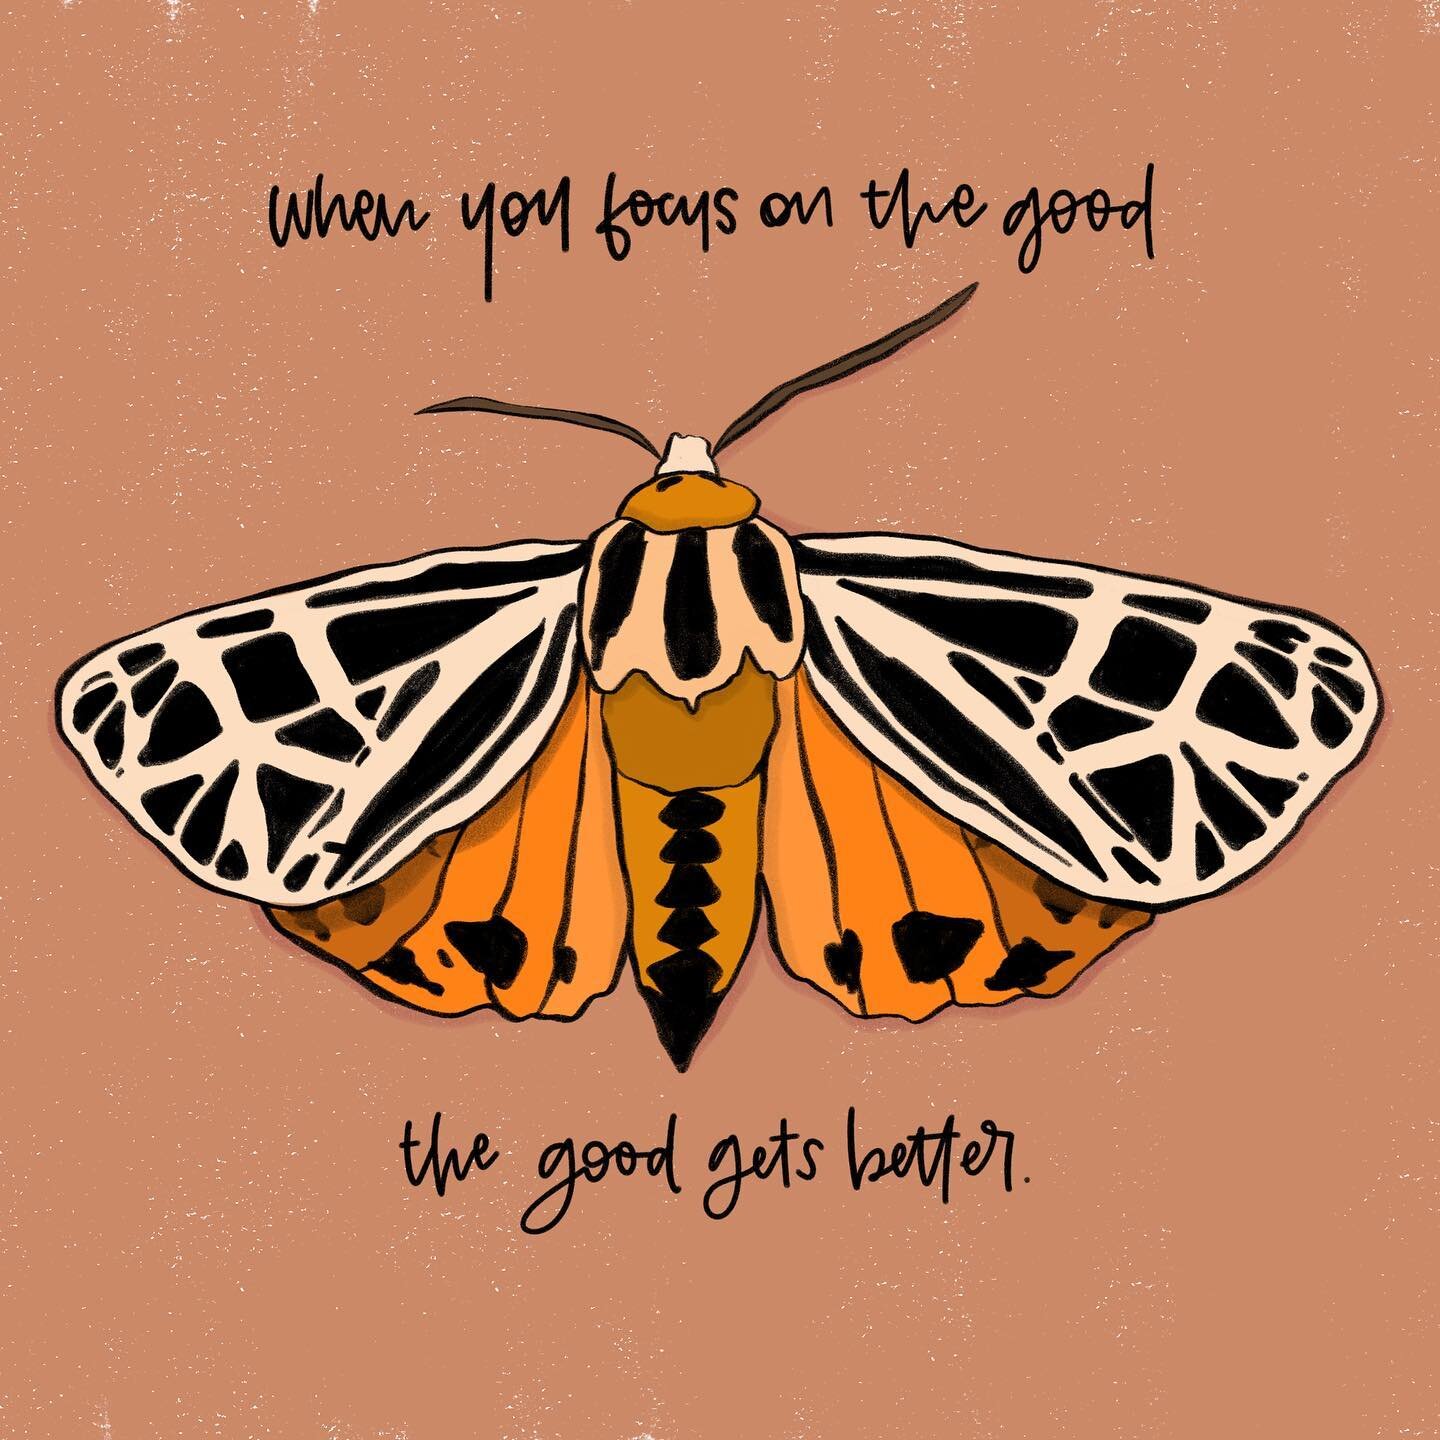 Focus on the good. 

#illustration #procreate #ipadpro #ipadproc#butterfly #annaleighdeisgn